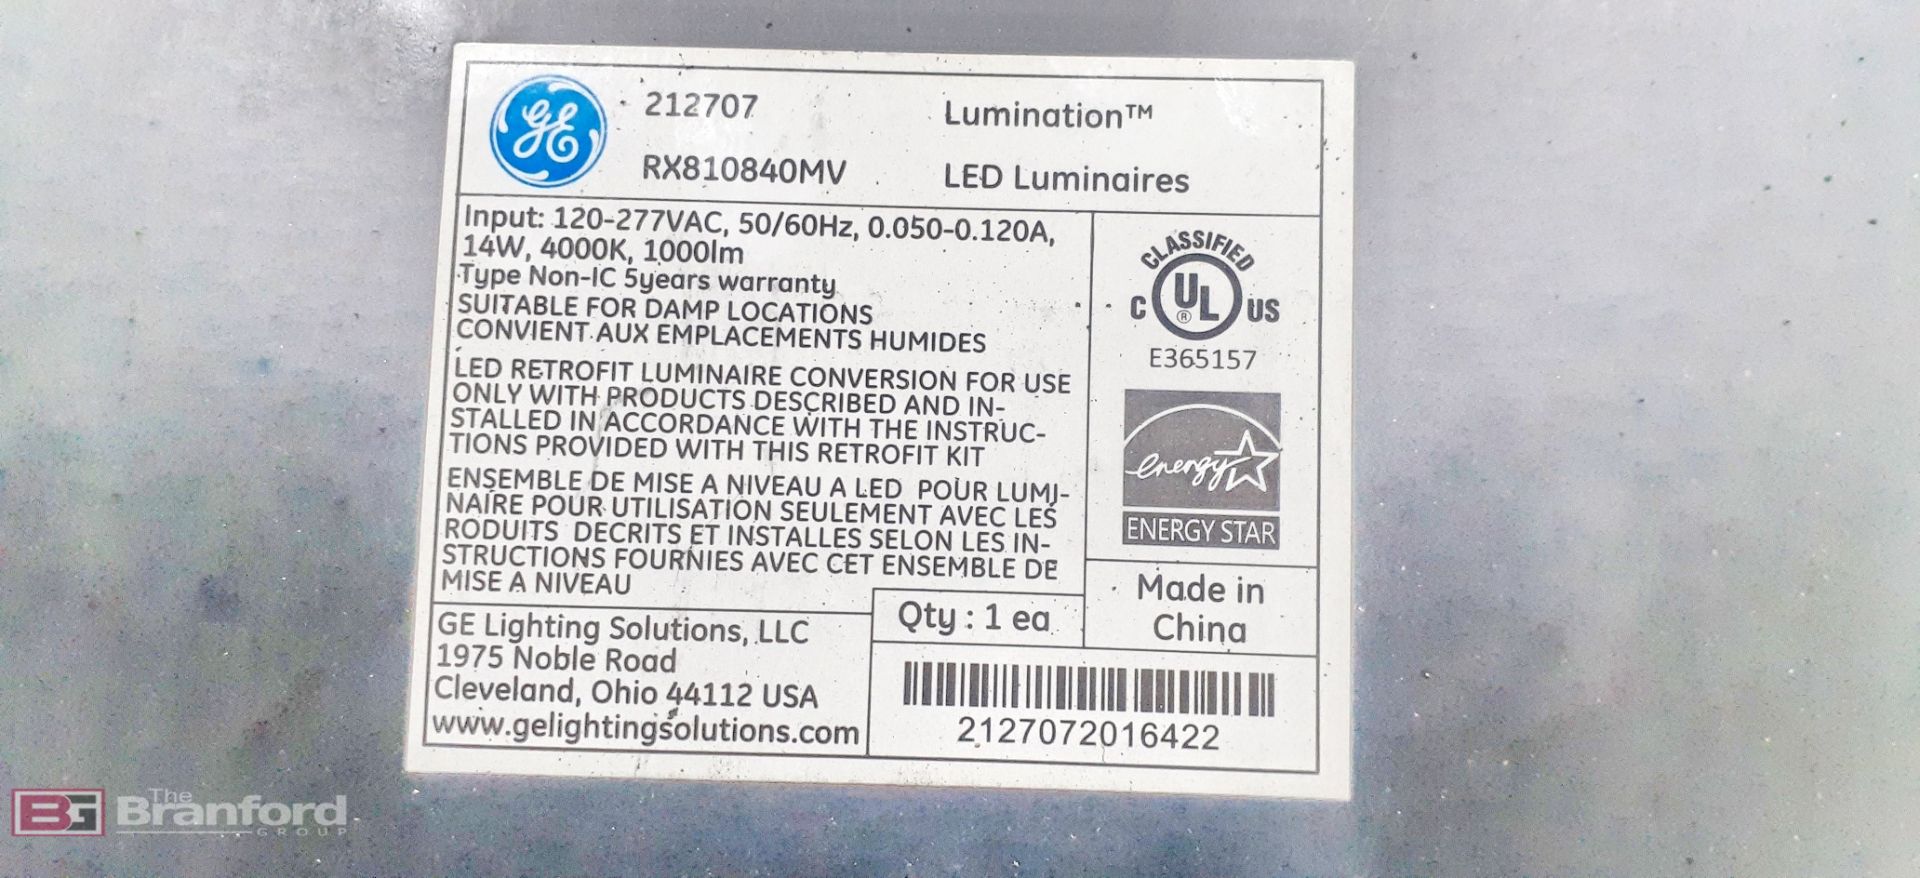 Lot of GE LED Luminaire - Image 5 of 7